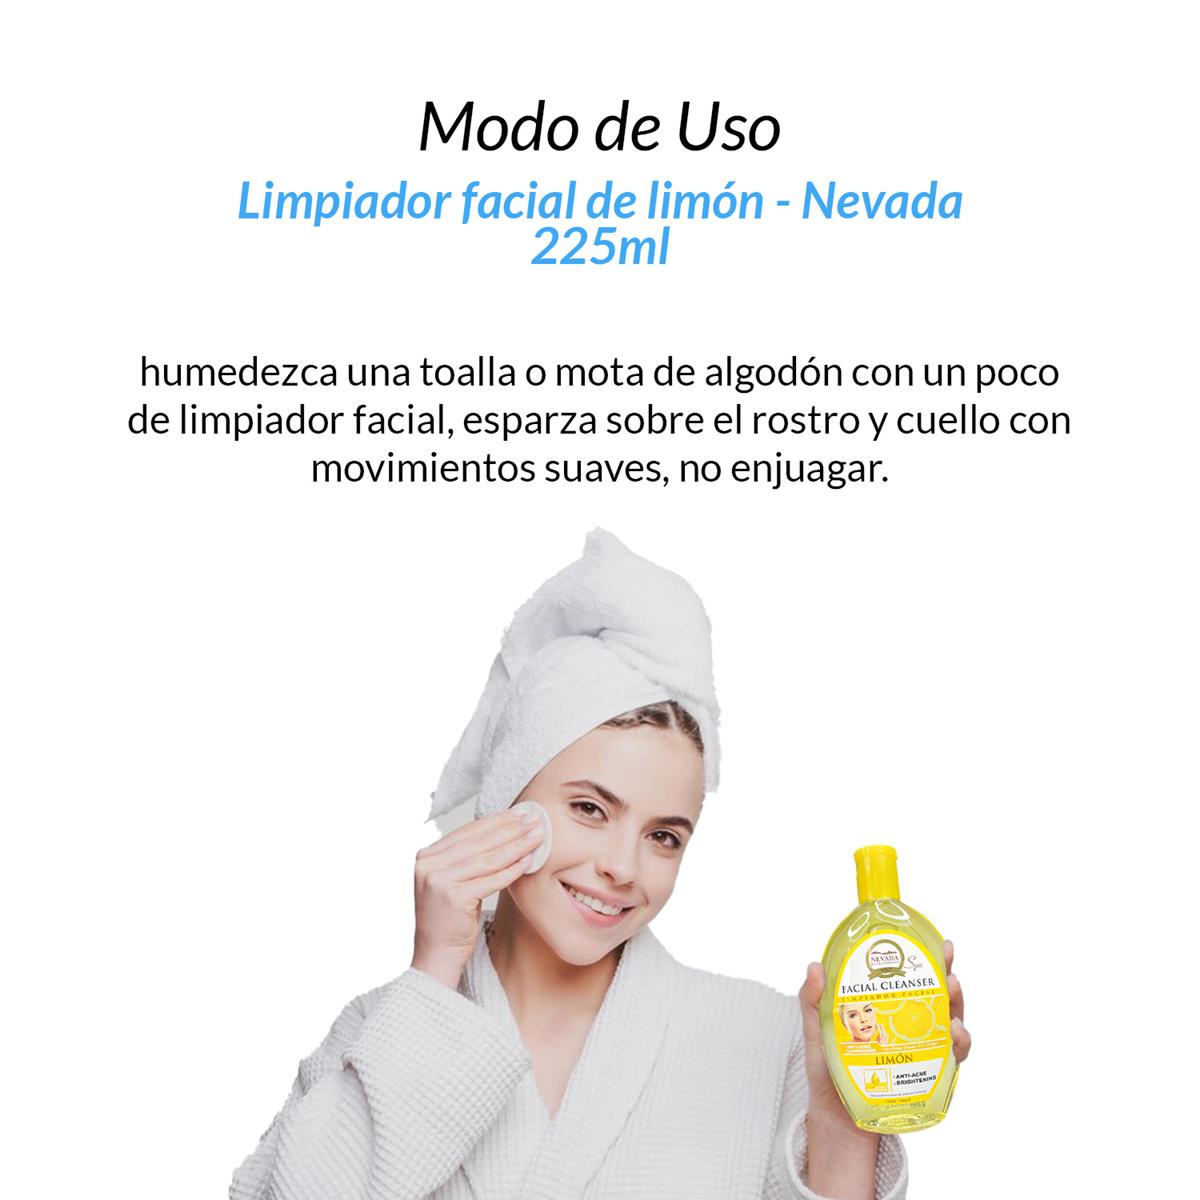 Limpiador facial de limon 225ml - Nevada